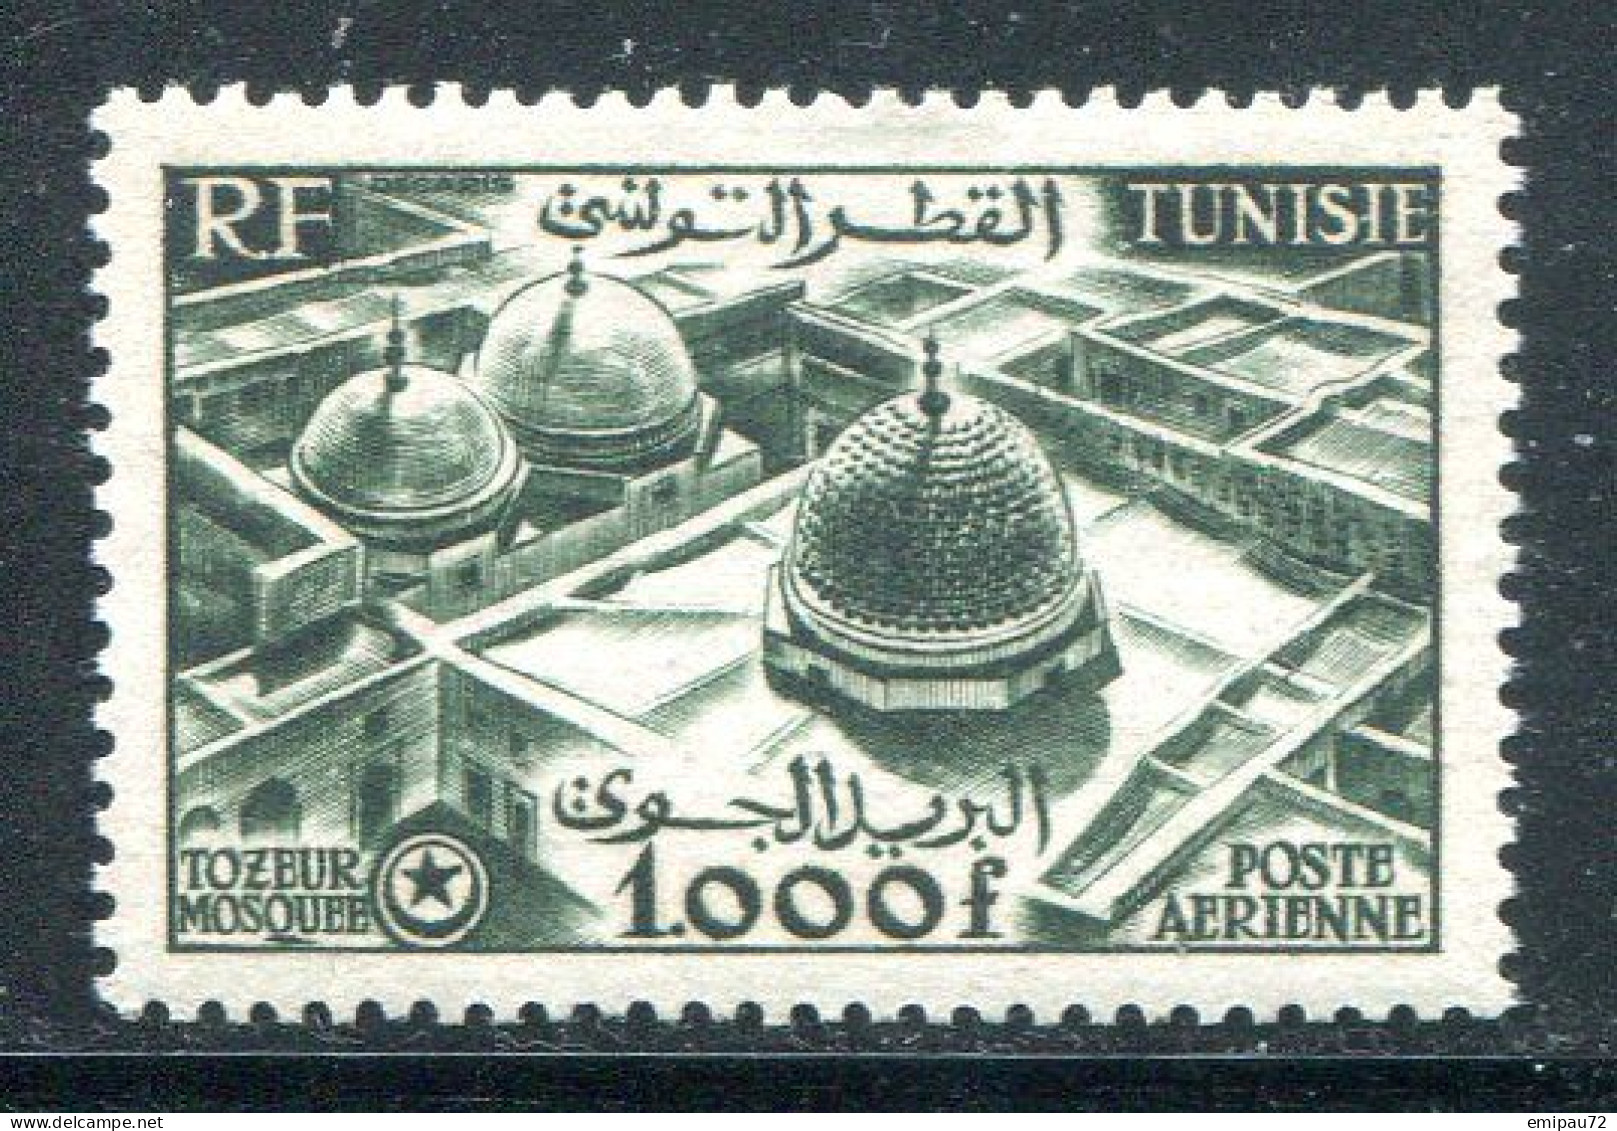 TUNISIE- P.A Y&T N°19- Neuf Avec Charnière * - Poste Aérienne